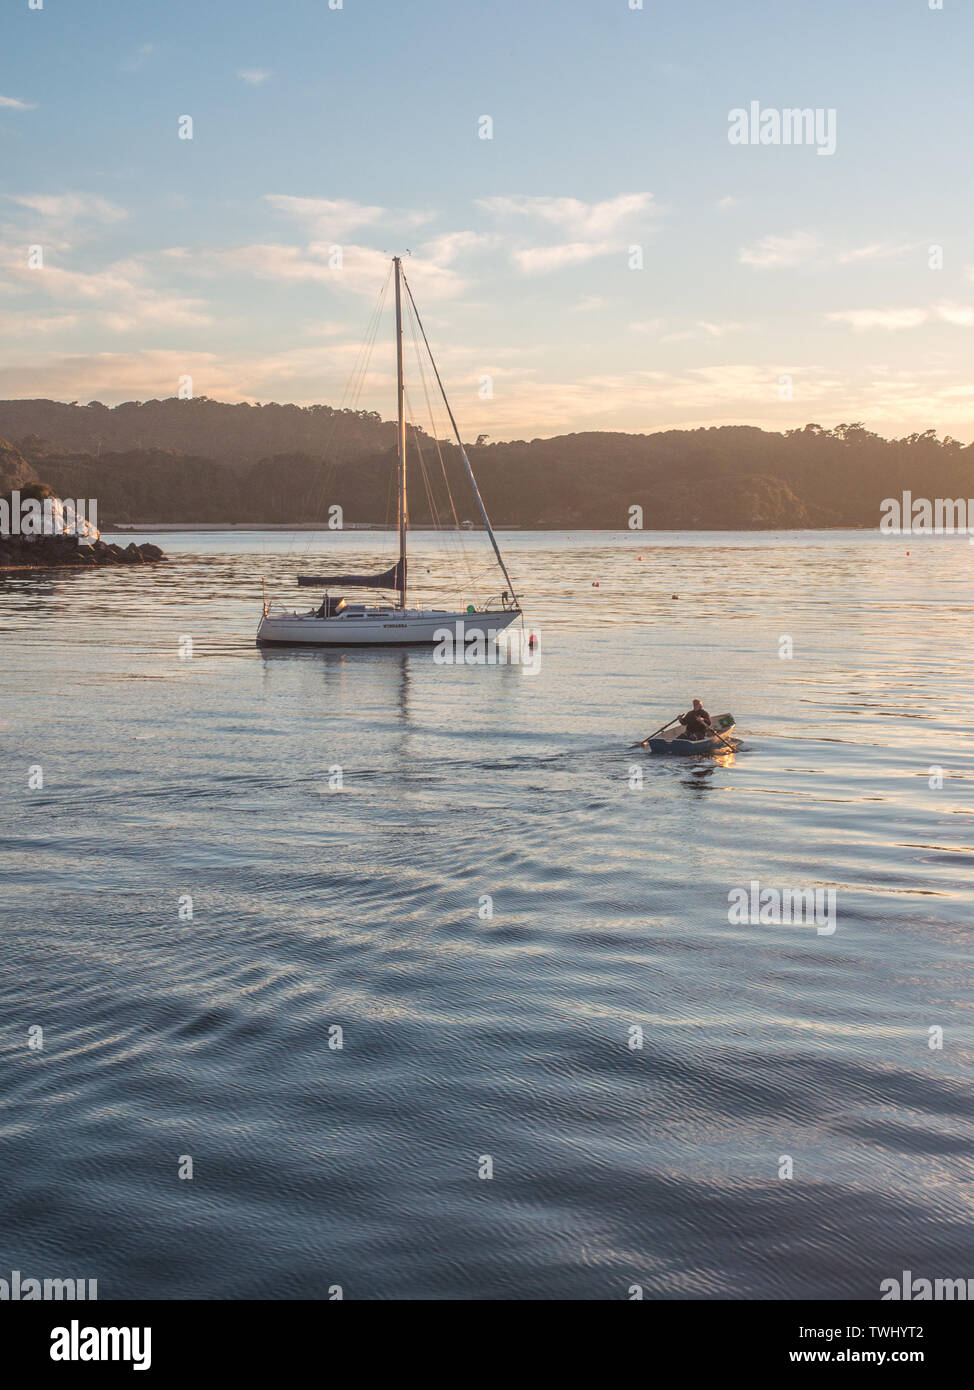 La mattina presto la luce riflessa da un mare calmo, un uomo canottaggio un dinghy verso un yacht ormeggiati, Halfmoon Bay, Rakiura Isola Stewart, Nuova Zelanda Foto Stock